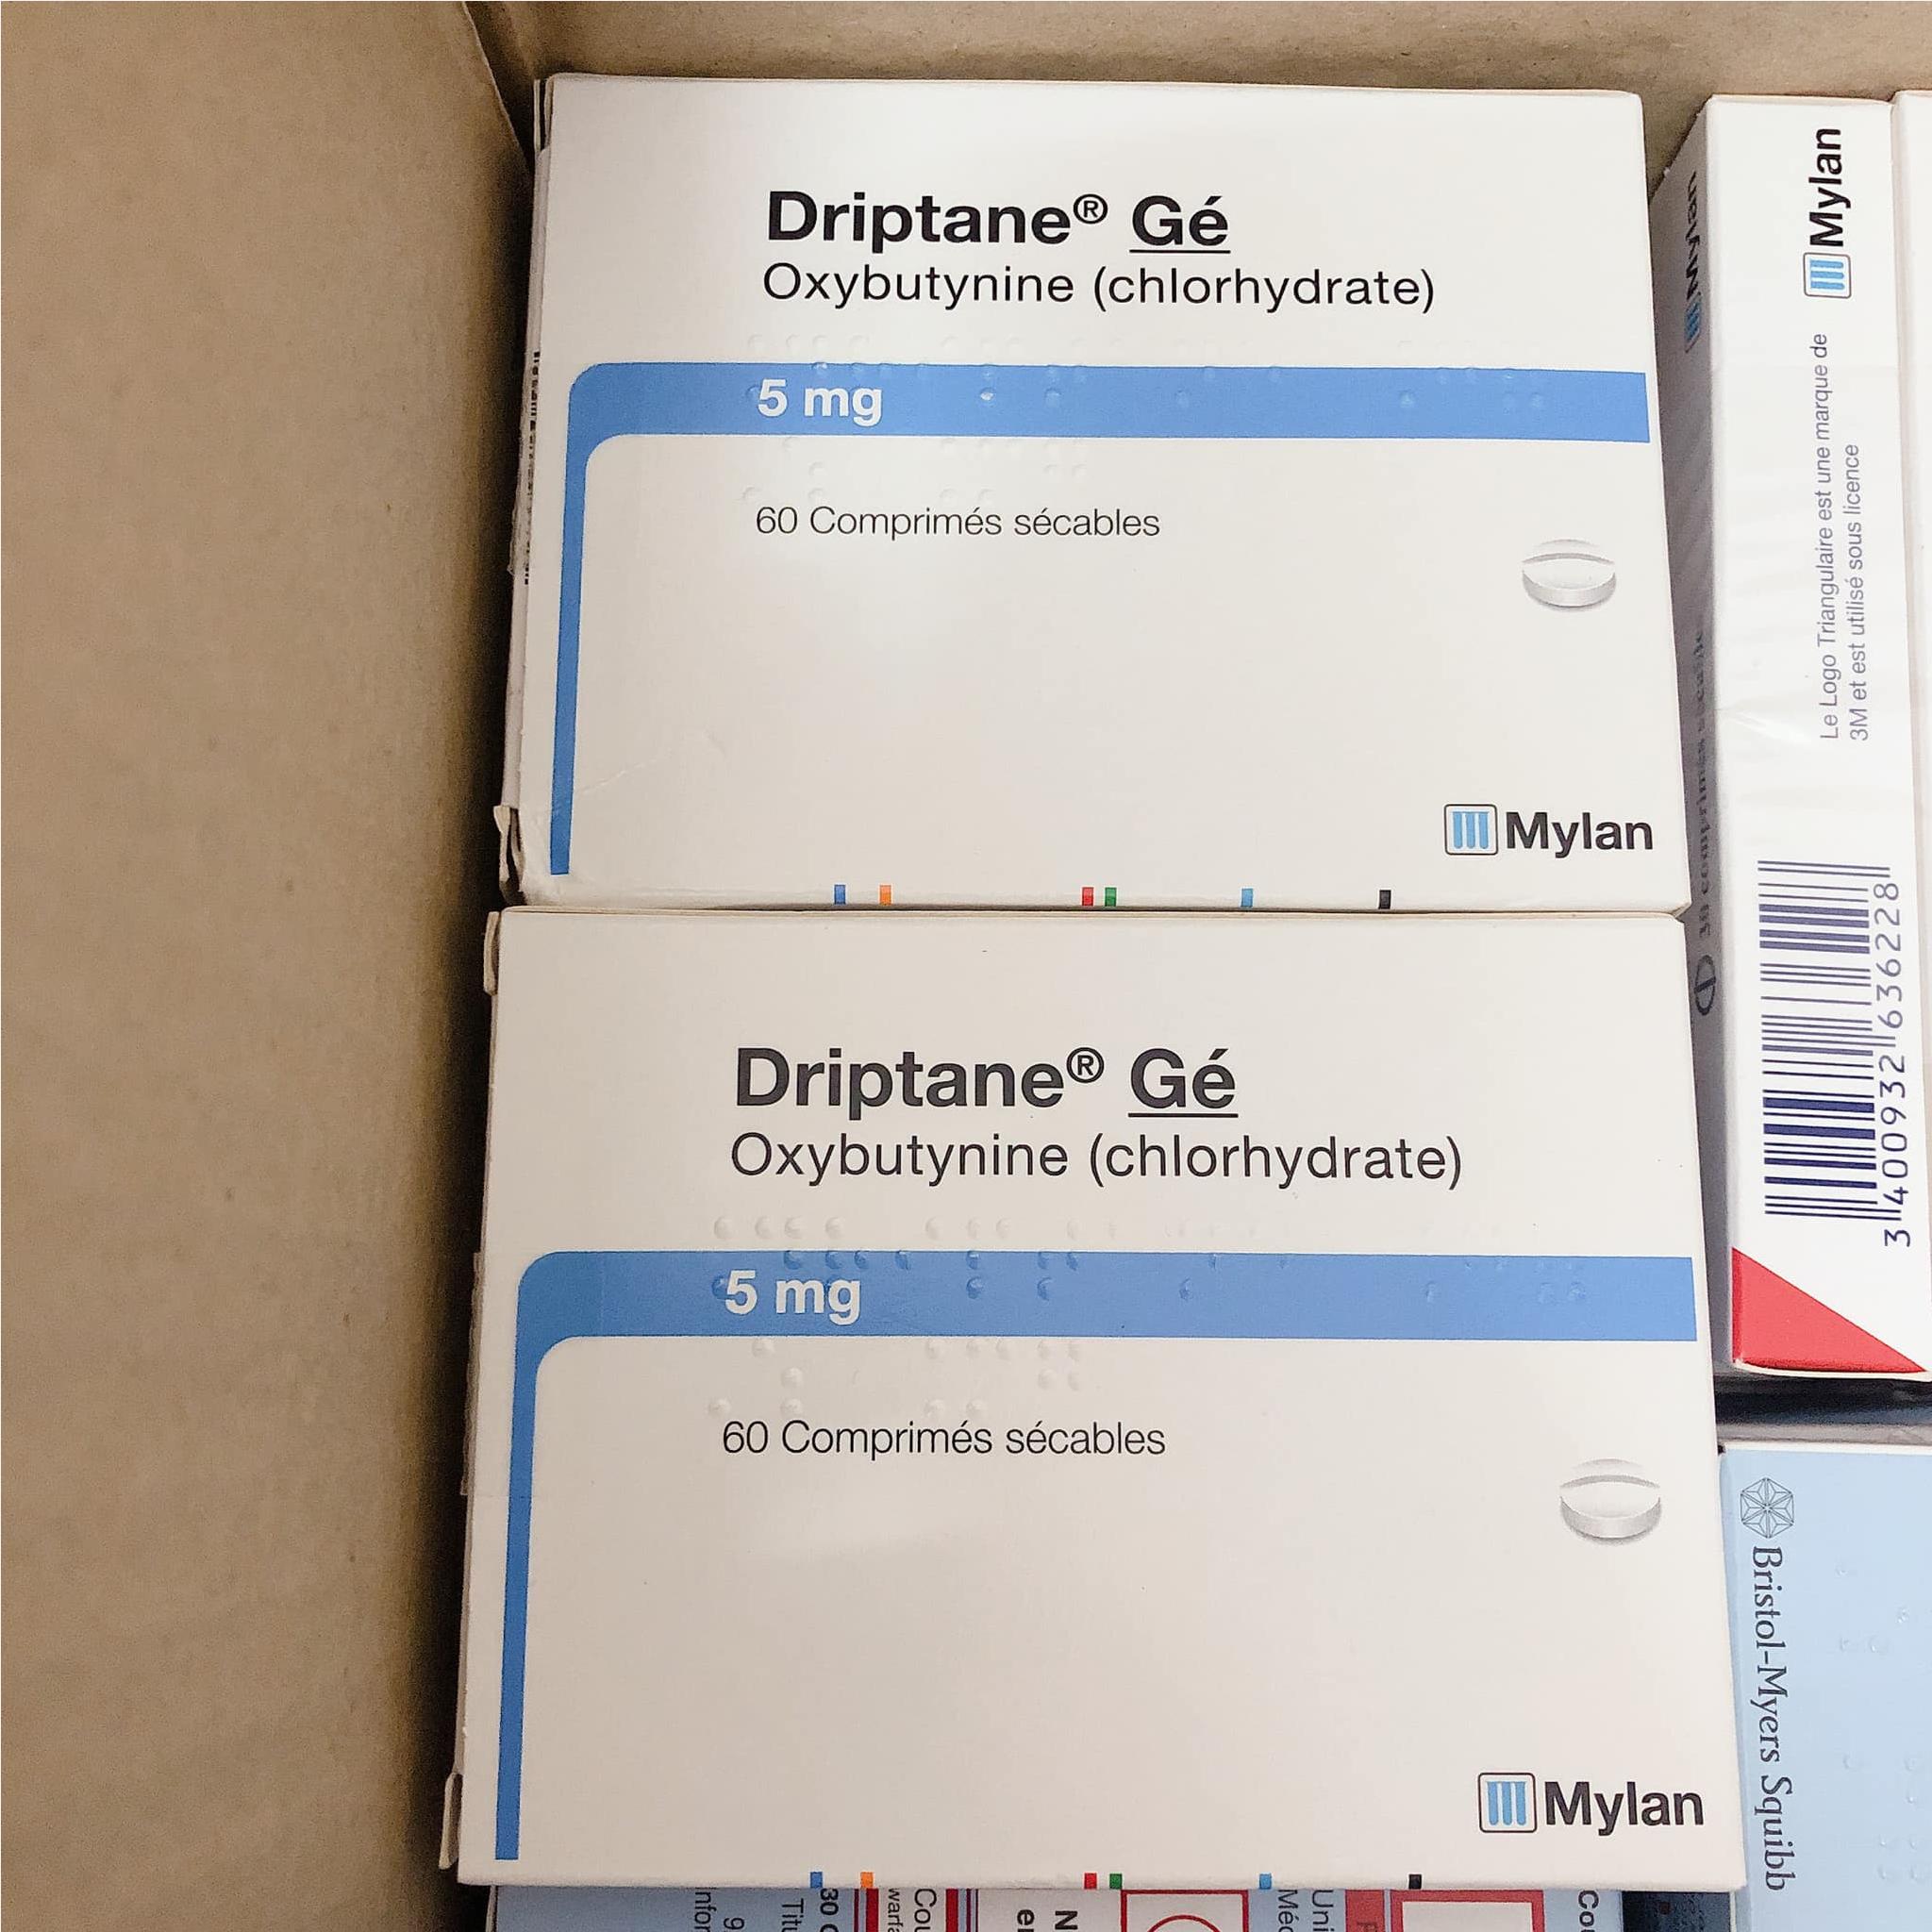 Thuốc Driptane Ge Oxybutynin 5mg giá bao nhiêu mua ở đâu?